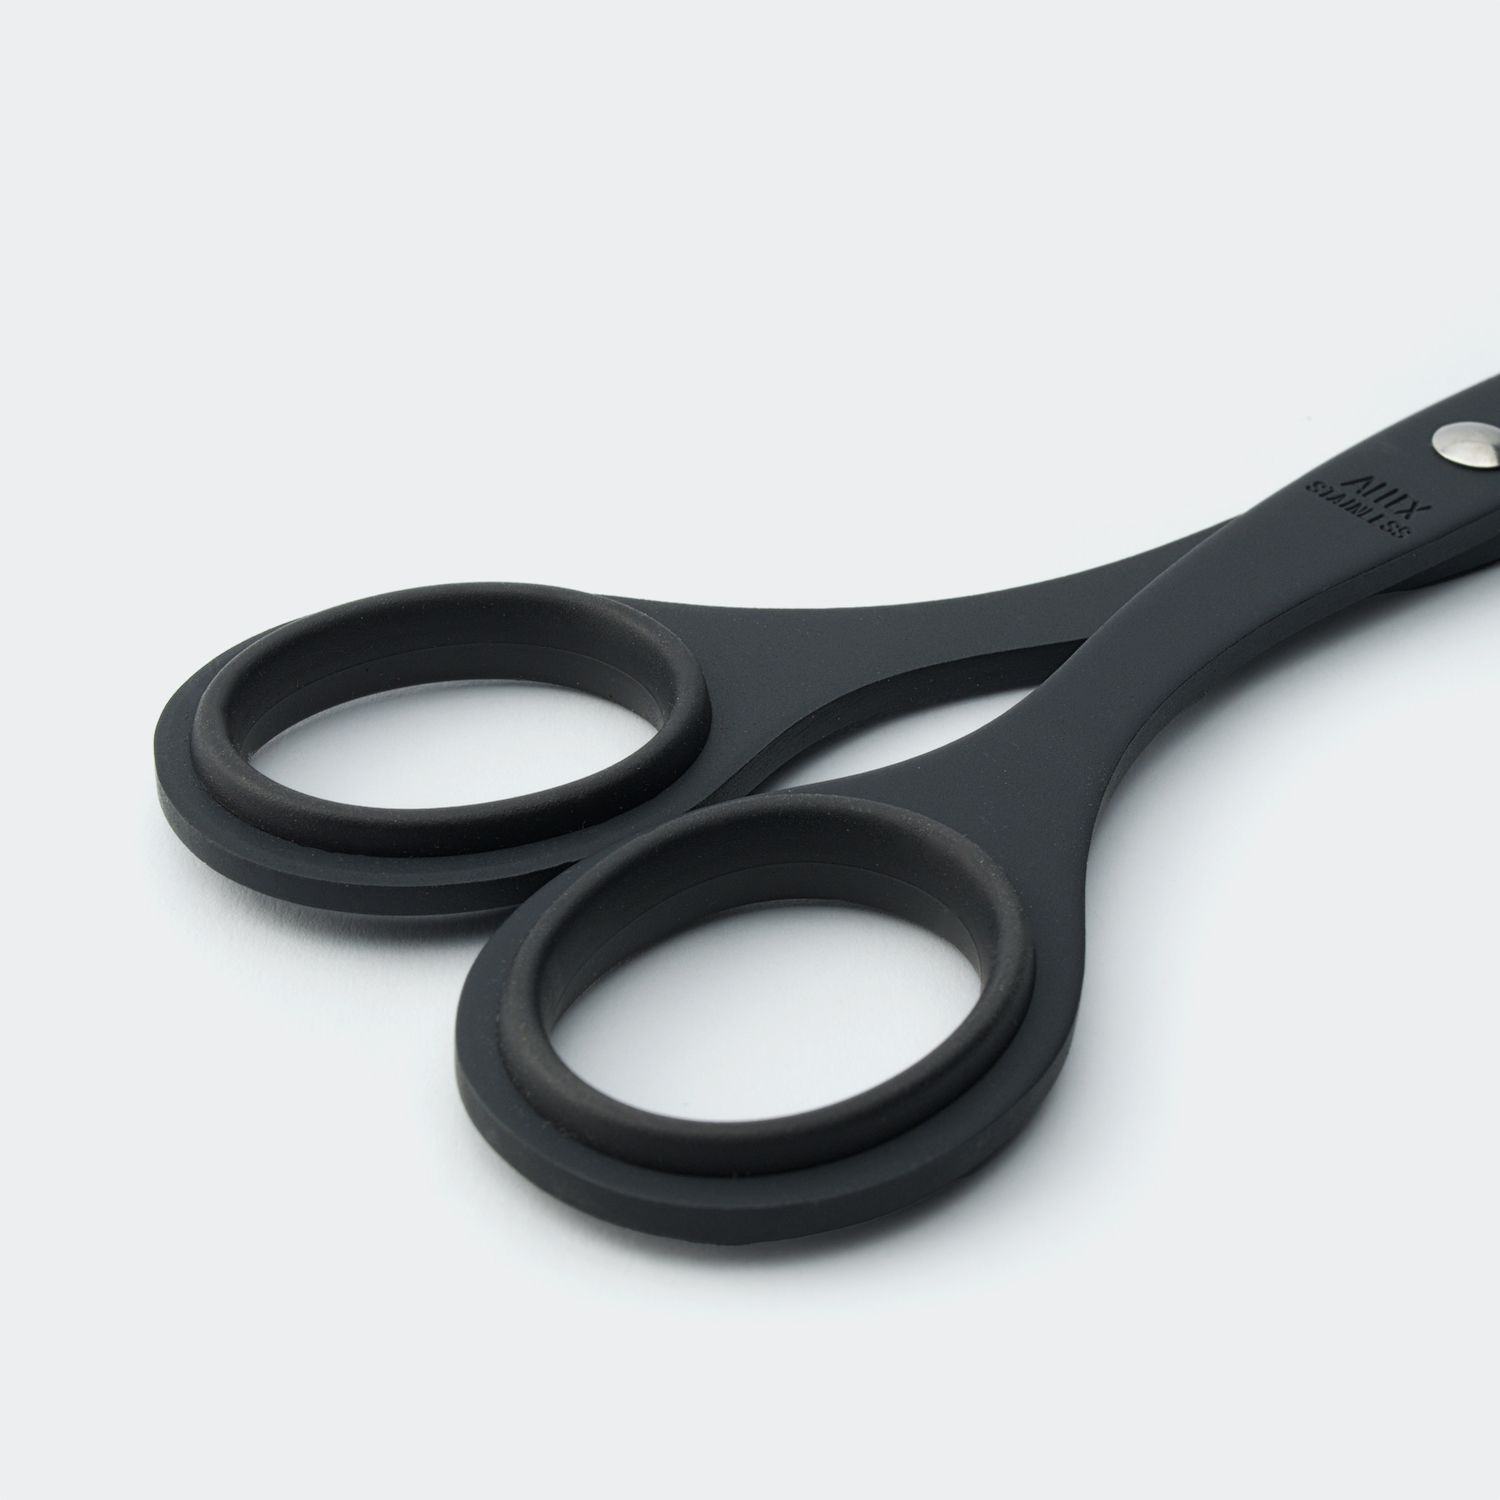 Allex Large Desk Scissors